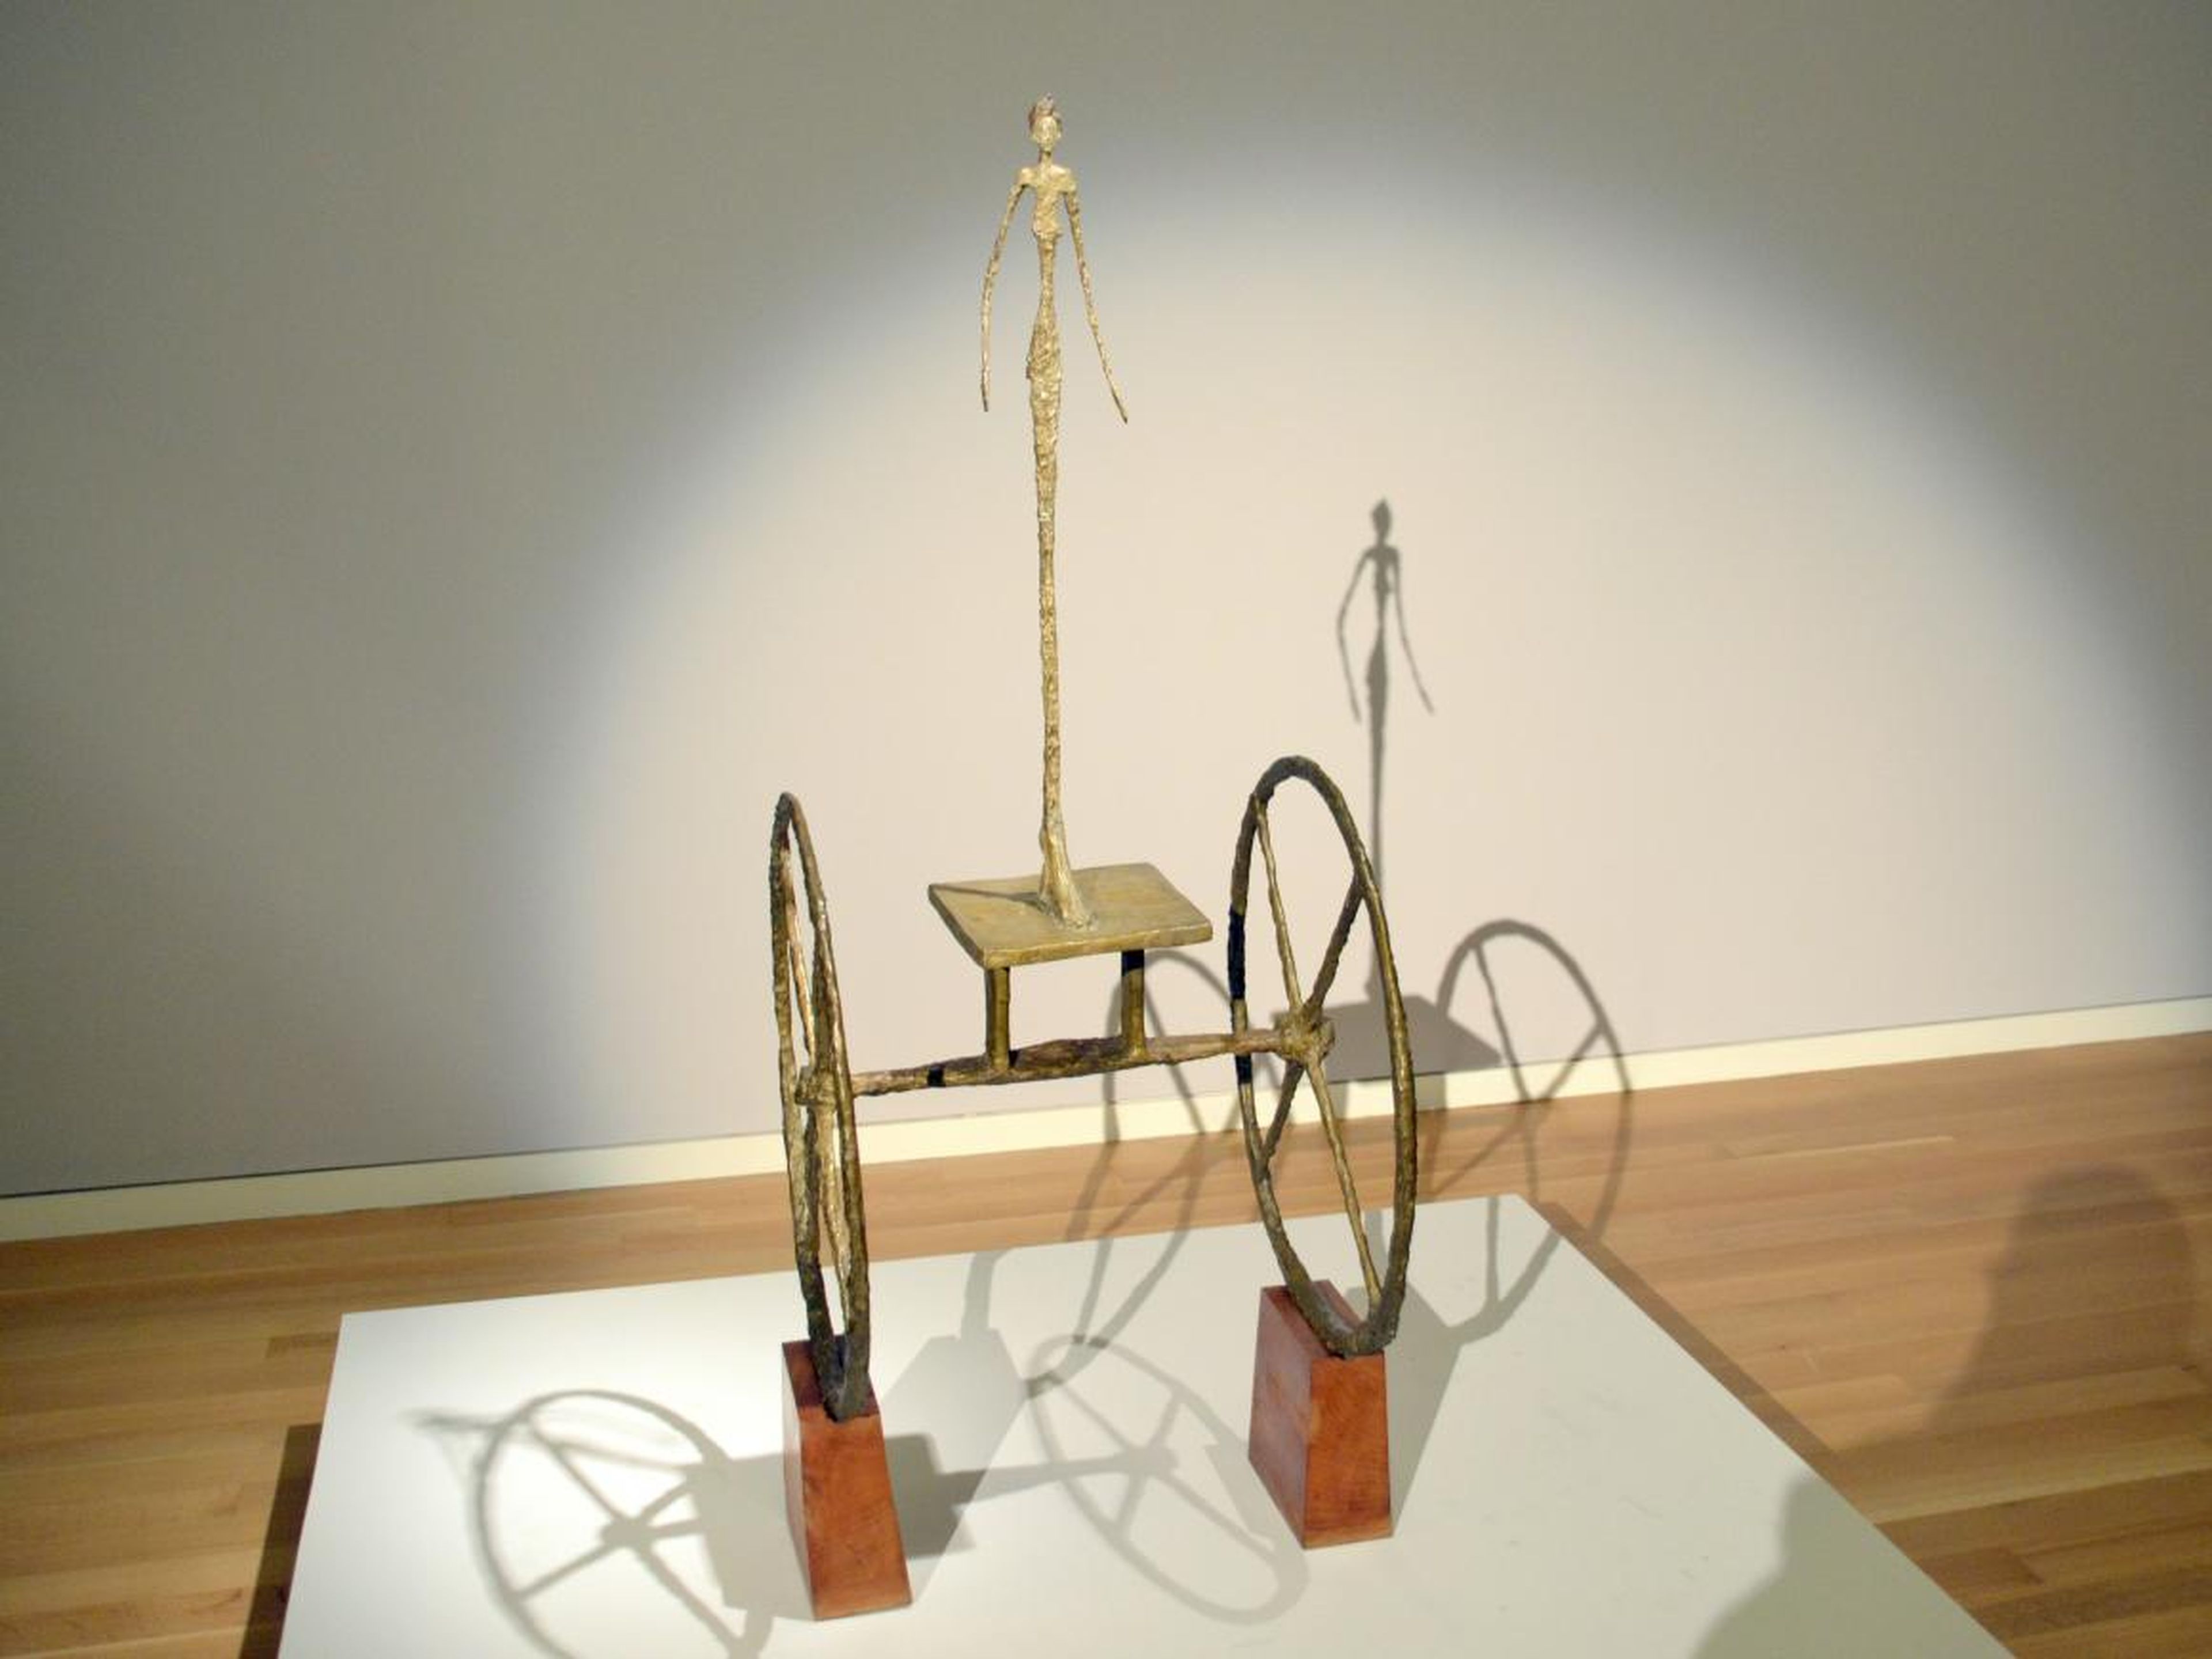 La escultura "Carroza" de Alberto Giacometti.